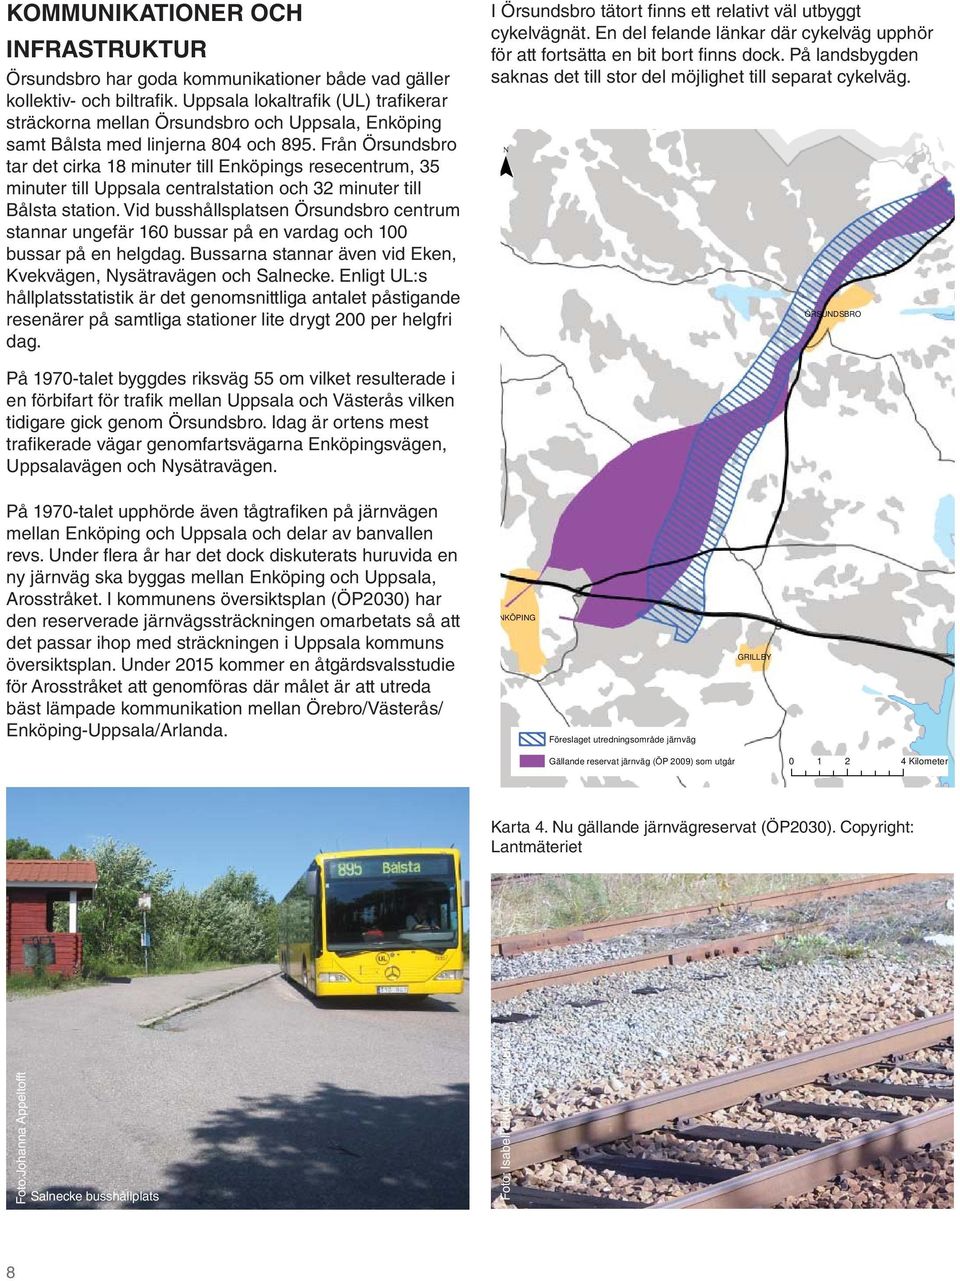 Från Örsundsbro tar det cirka 18 minuter till Enköpings resecentrum, 35 minuter till Uppsala centralstation och 32 minuter till Bålsta station.